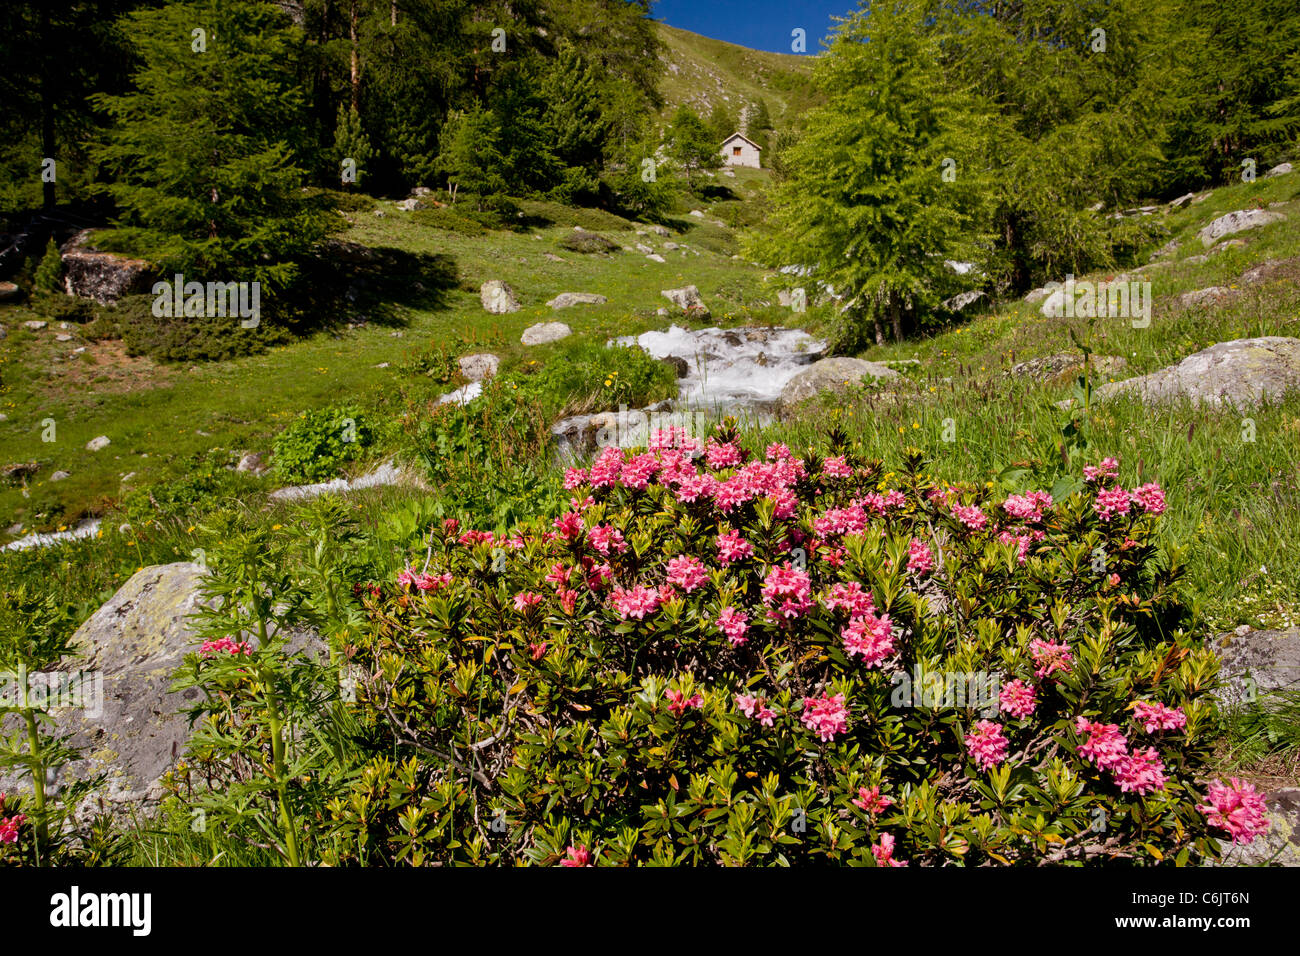 Alpenrose, Rhododendron ferrugineum in flower by an alpine stream, Engadin valley, Switzerland Stock Photo